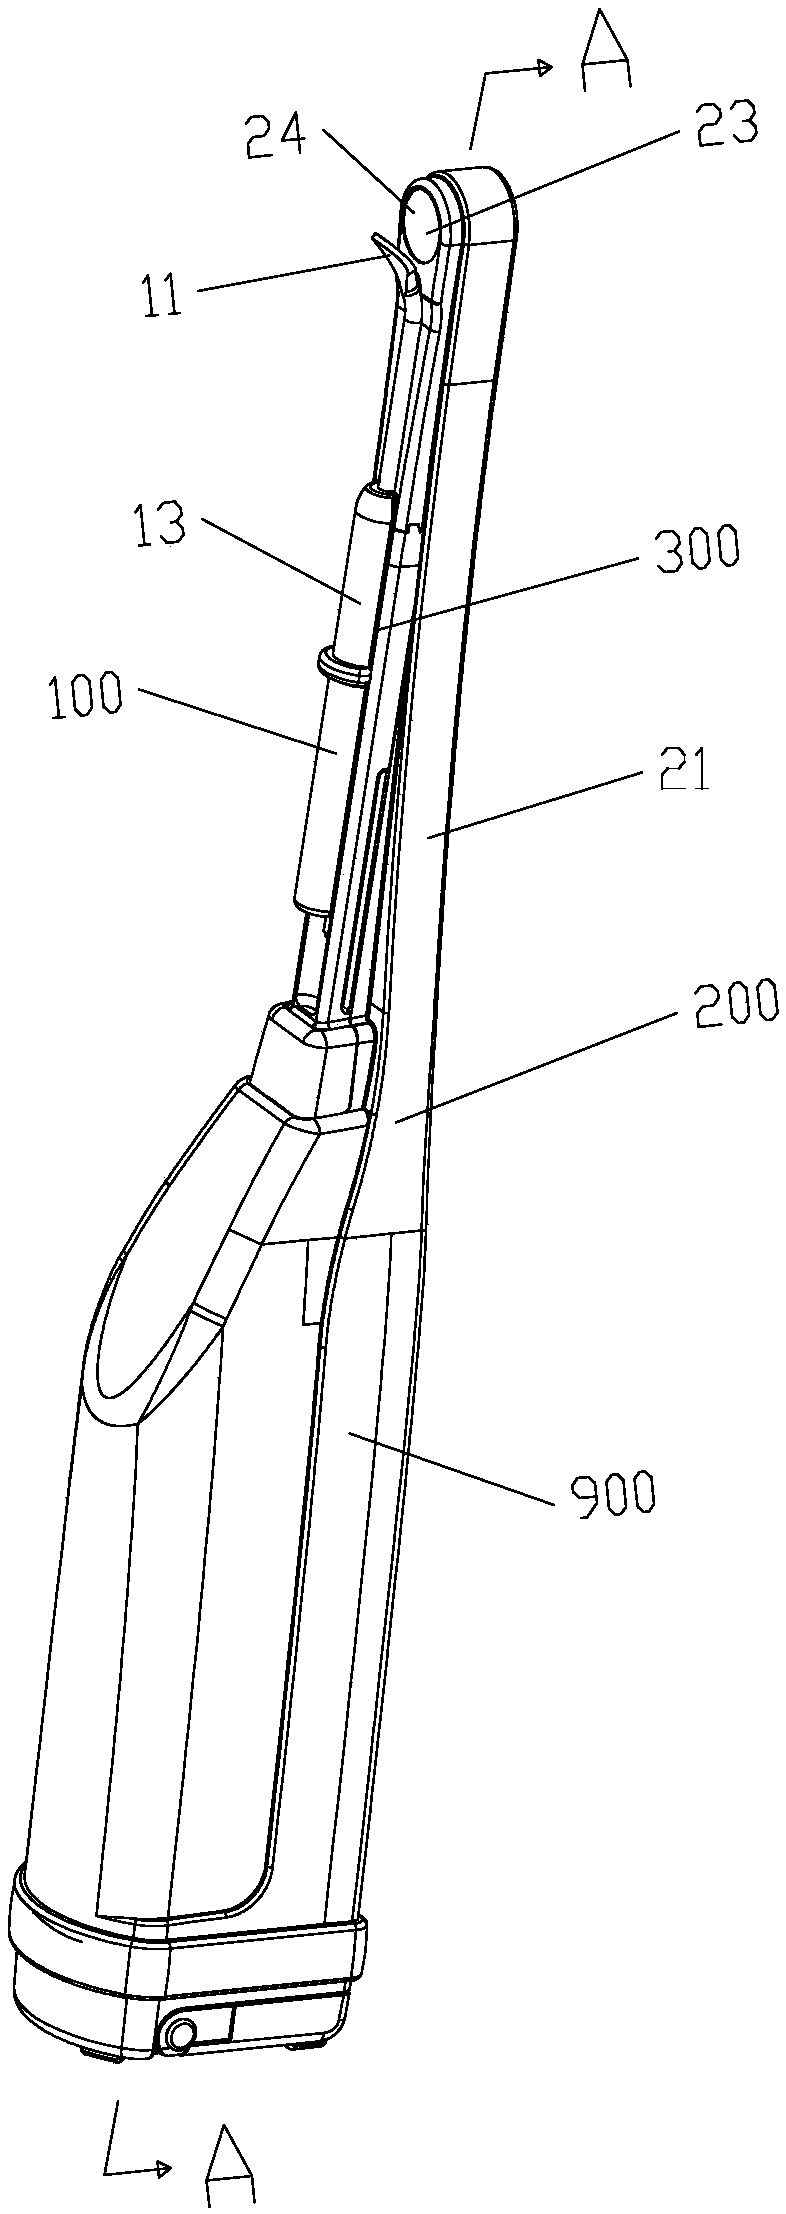 Visible oral cavity spatula